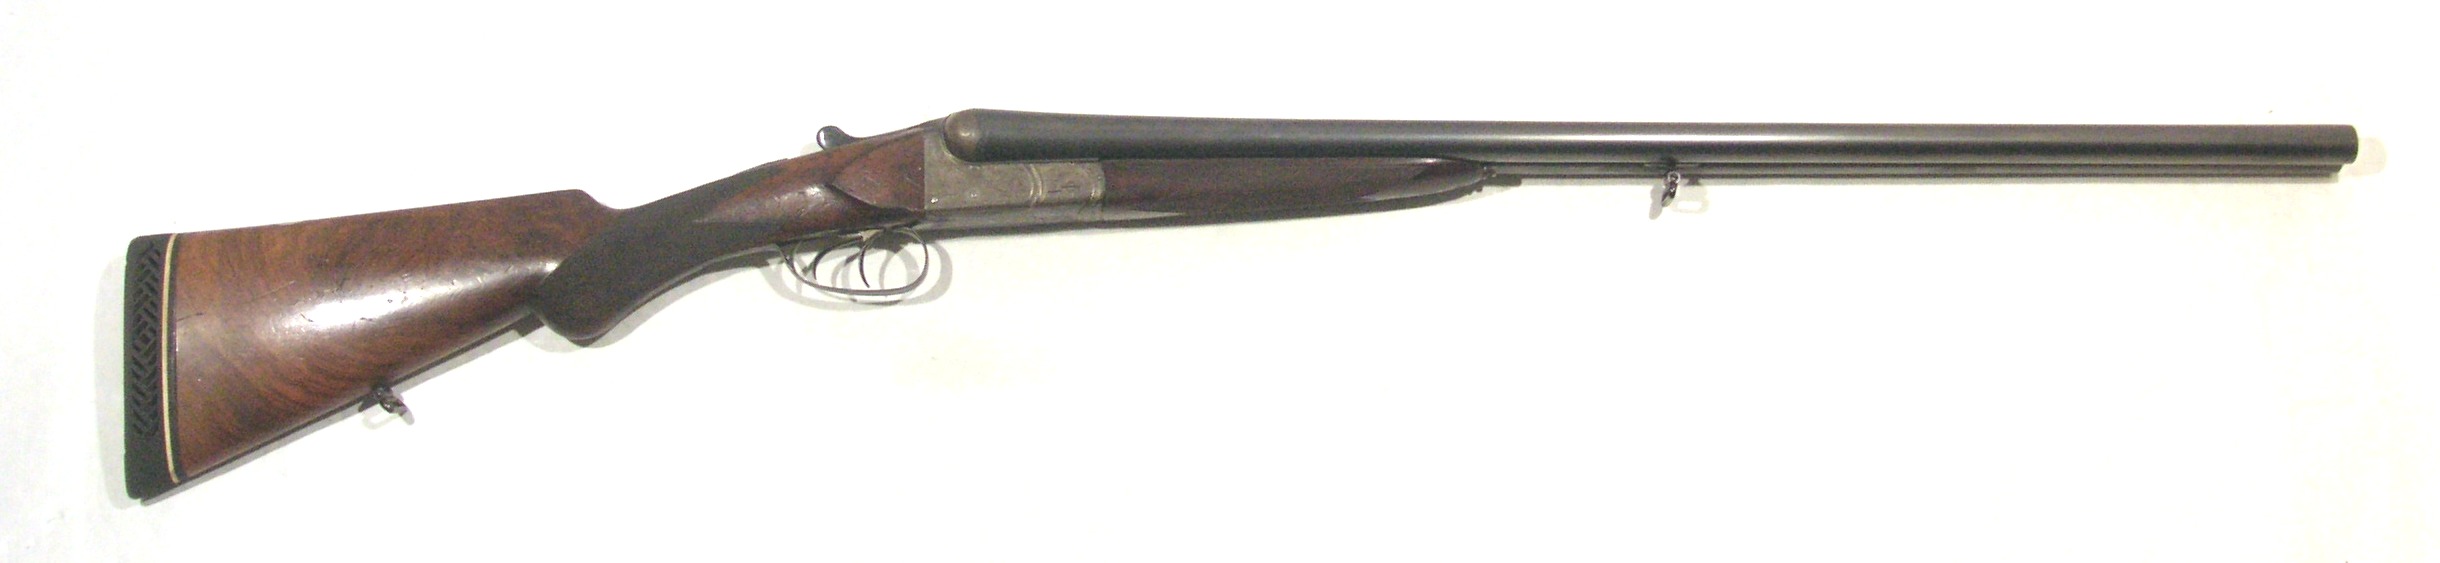 Escopeta JABALI, modelo 30, calibre 12, nº 28749-0